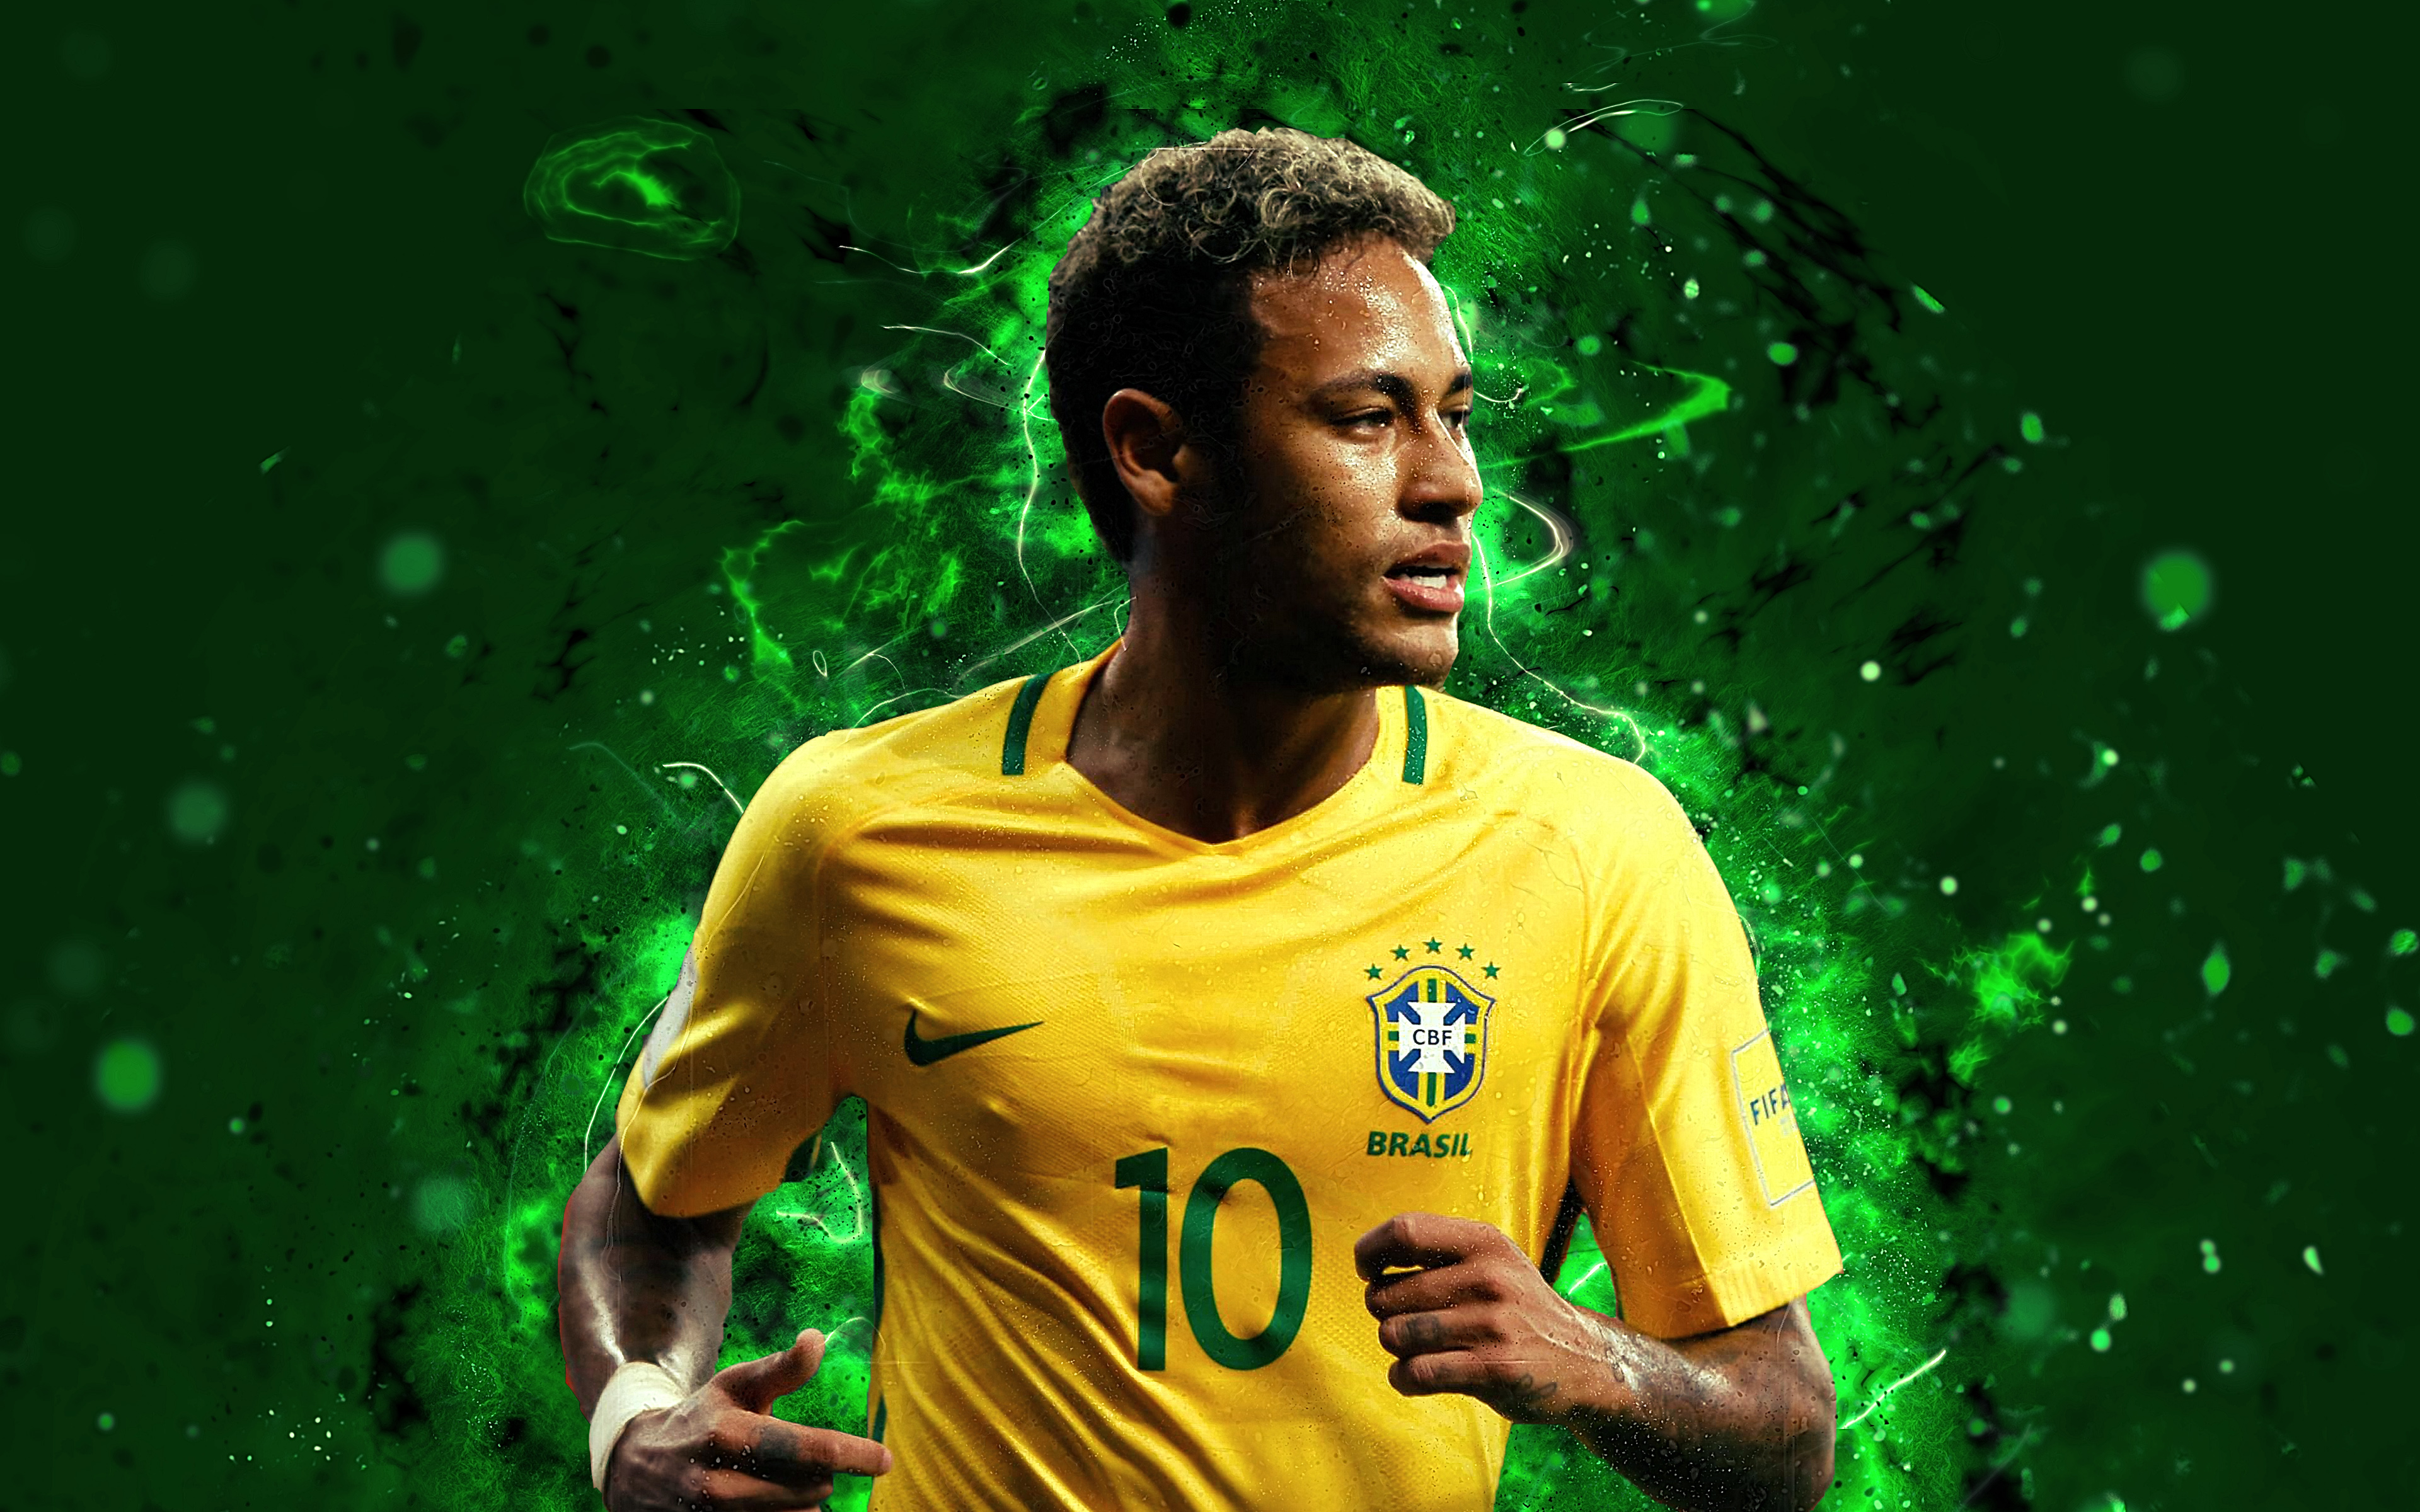 Tải 999 Hình Nền Neymar Jr N11 Đẹp và Độc Nhất 2017